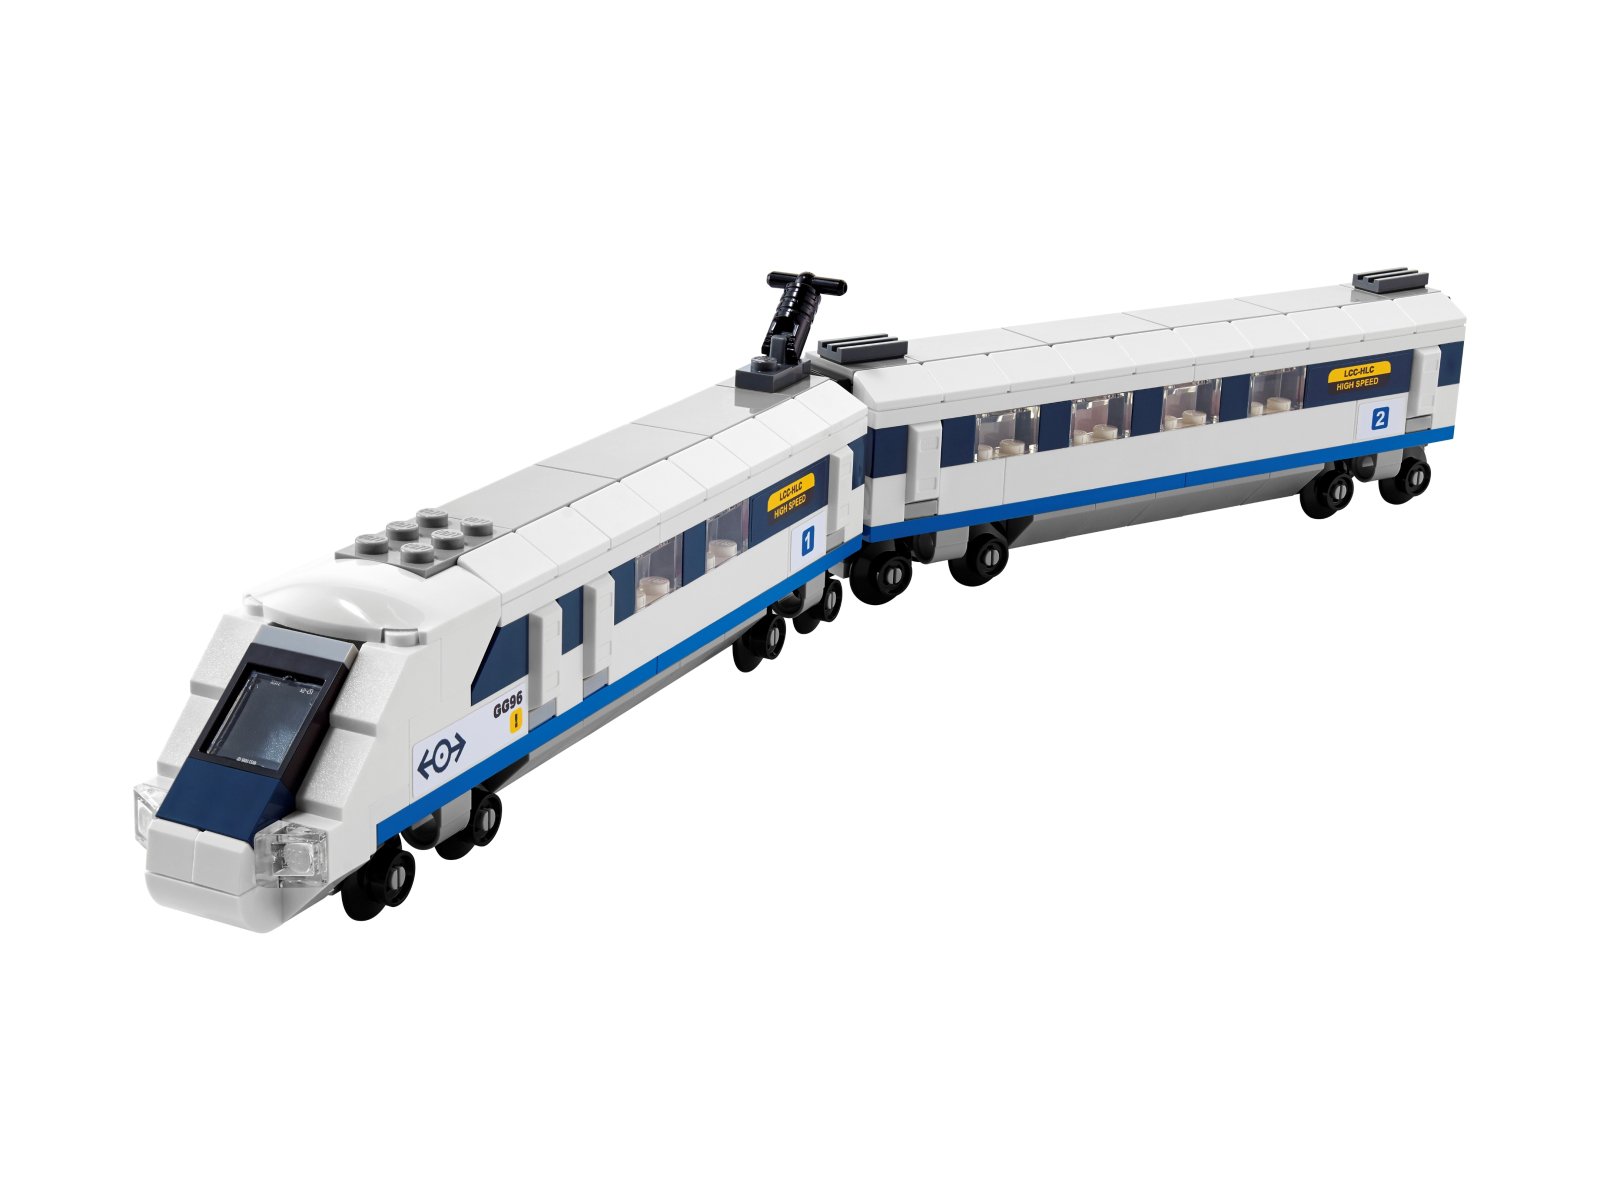 LEGO 40518 Pociąg szybkobieżny